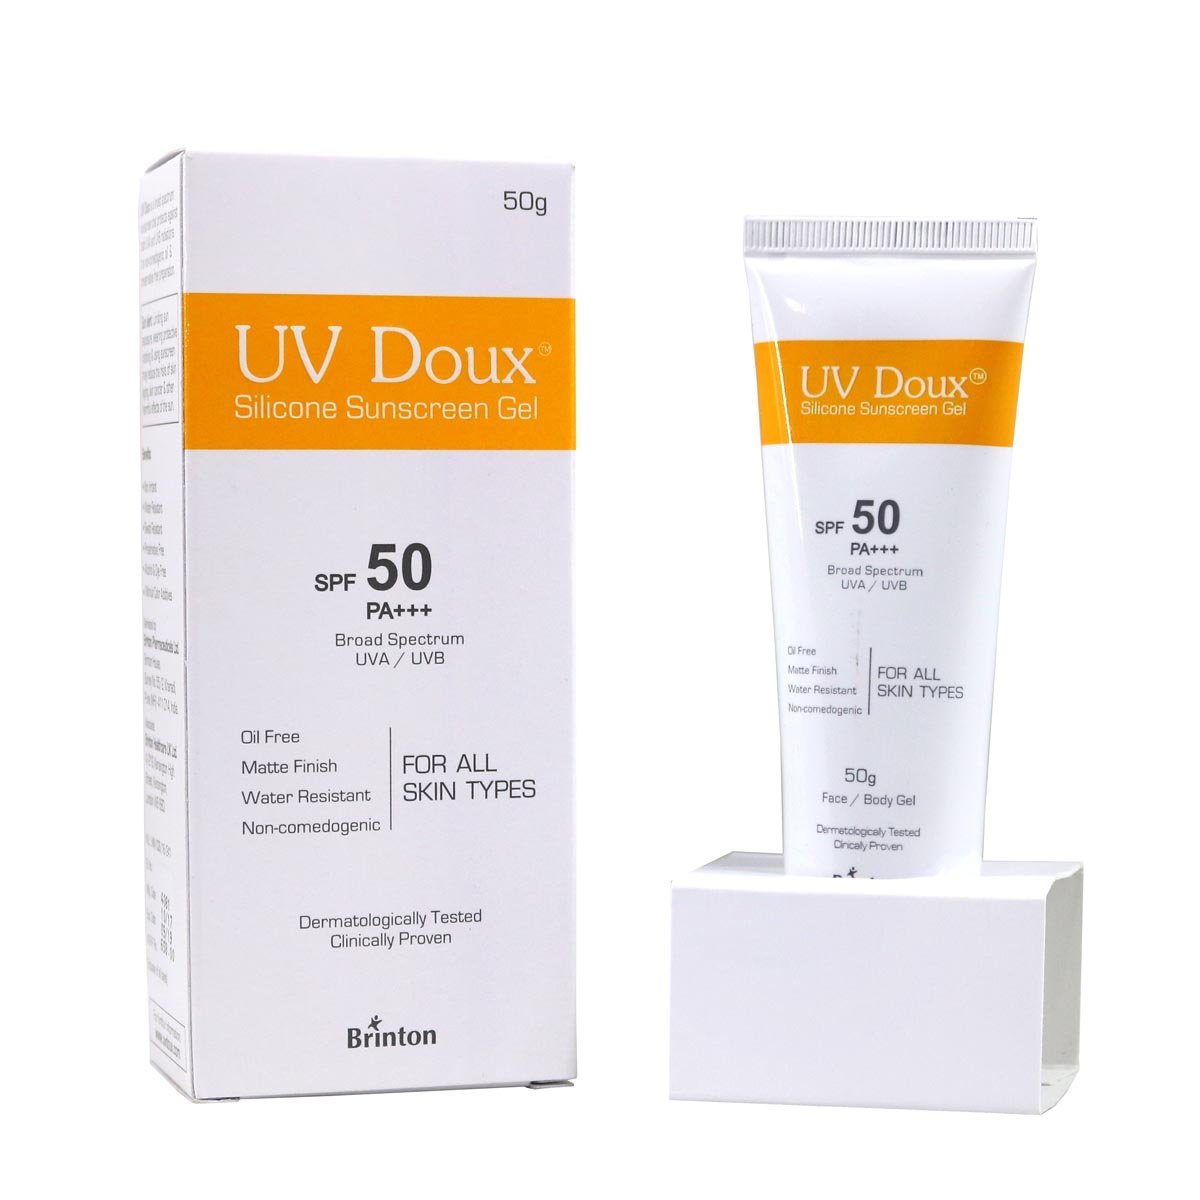 UV Doux SPF 50 PA